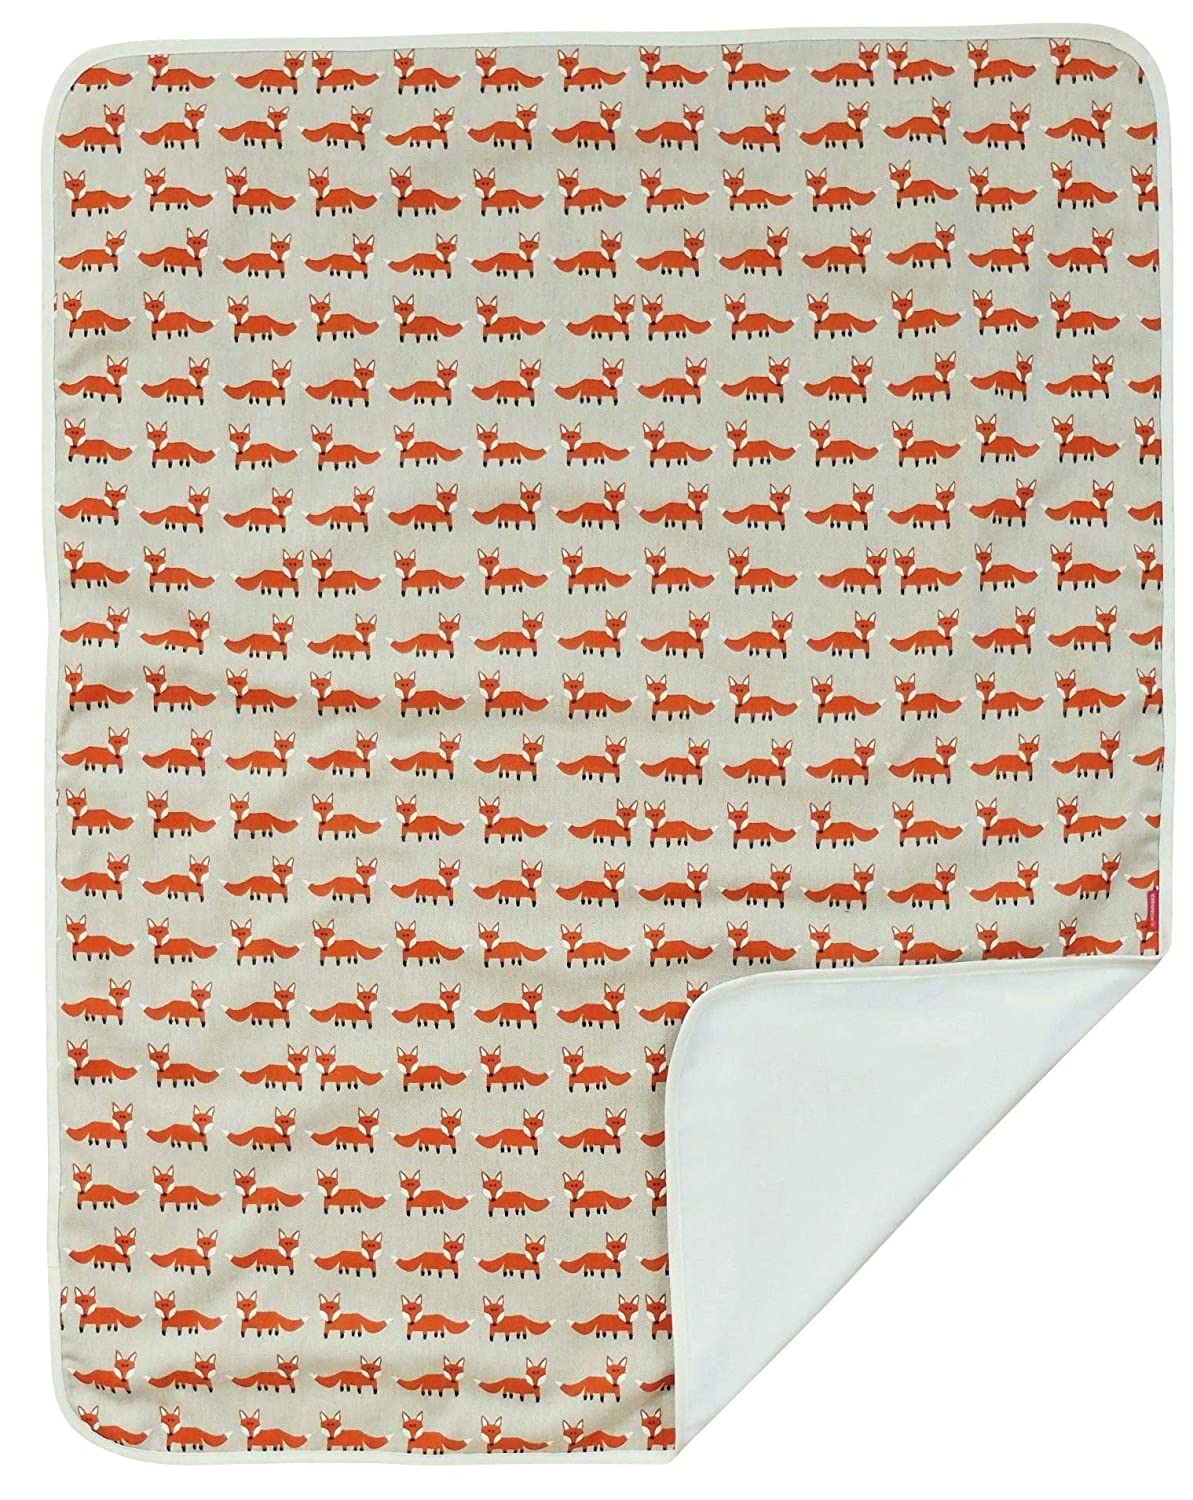 Ideenreich 2566 Ideenreich 2566 Baby Blanket Fox 70 x 90 cm Multi-Coloured